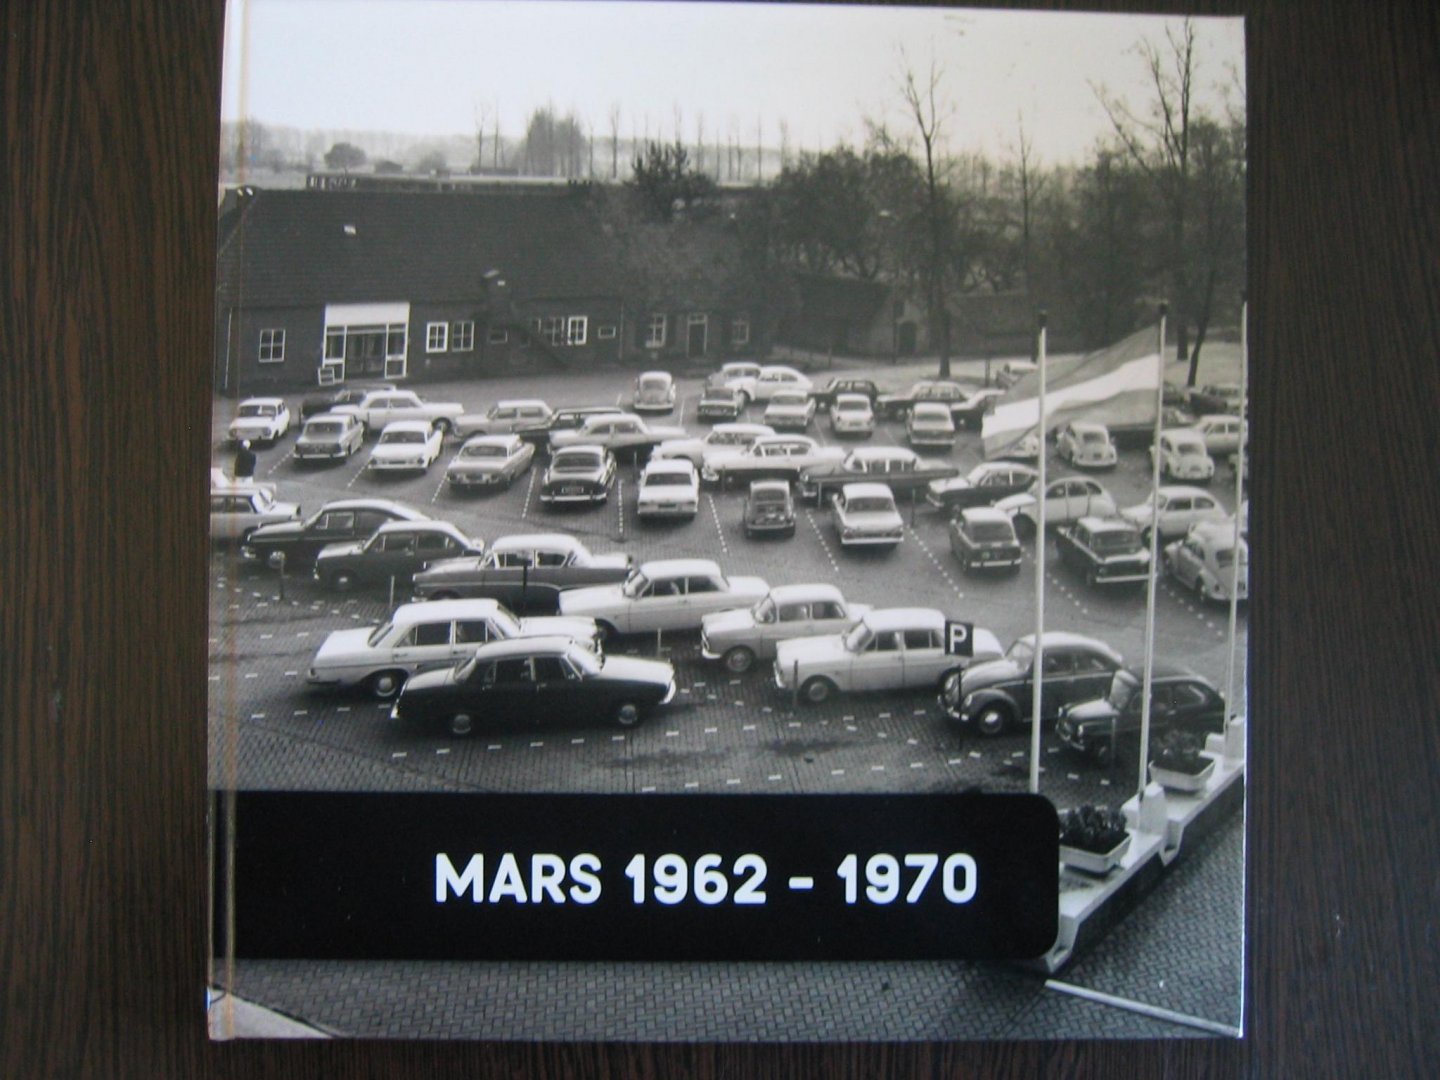 redactie - Mars 1962 - 1970 Veghel / Forrest Mars